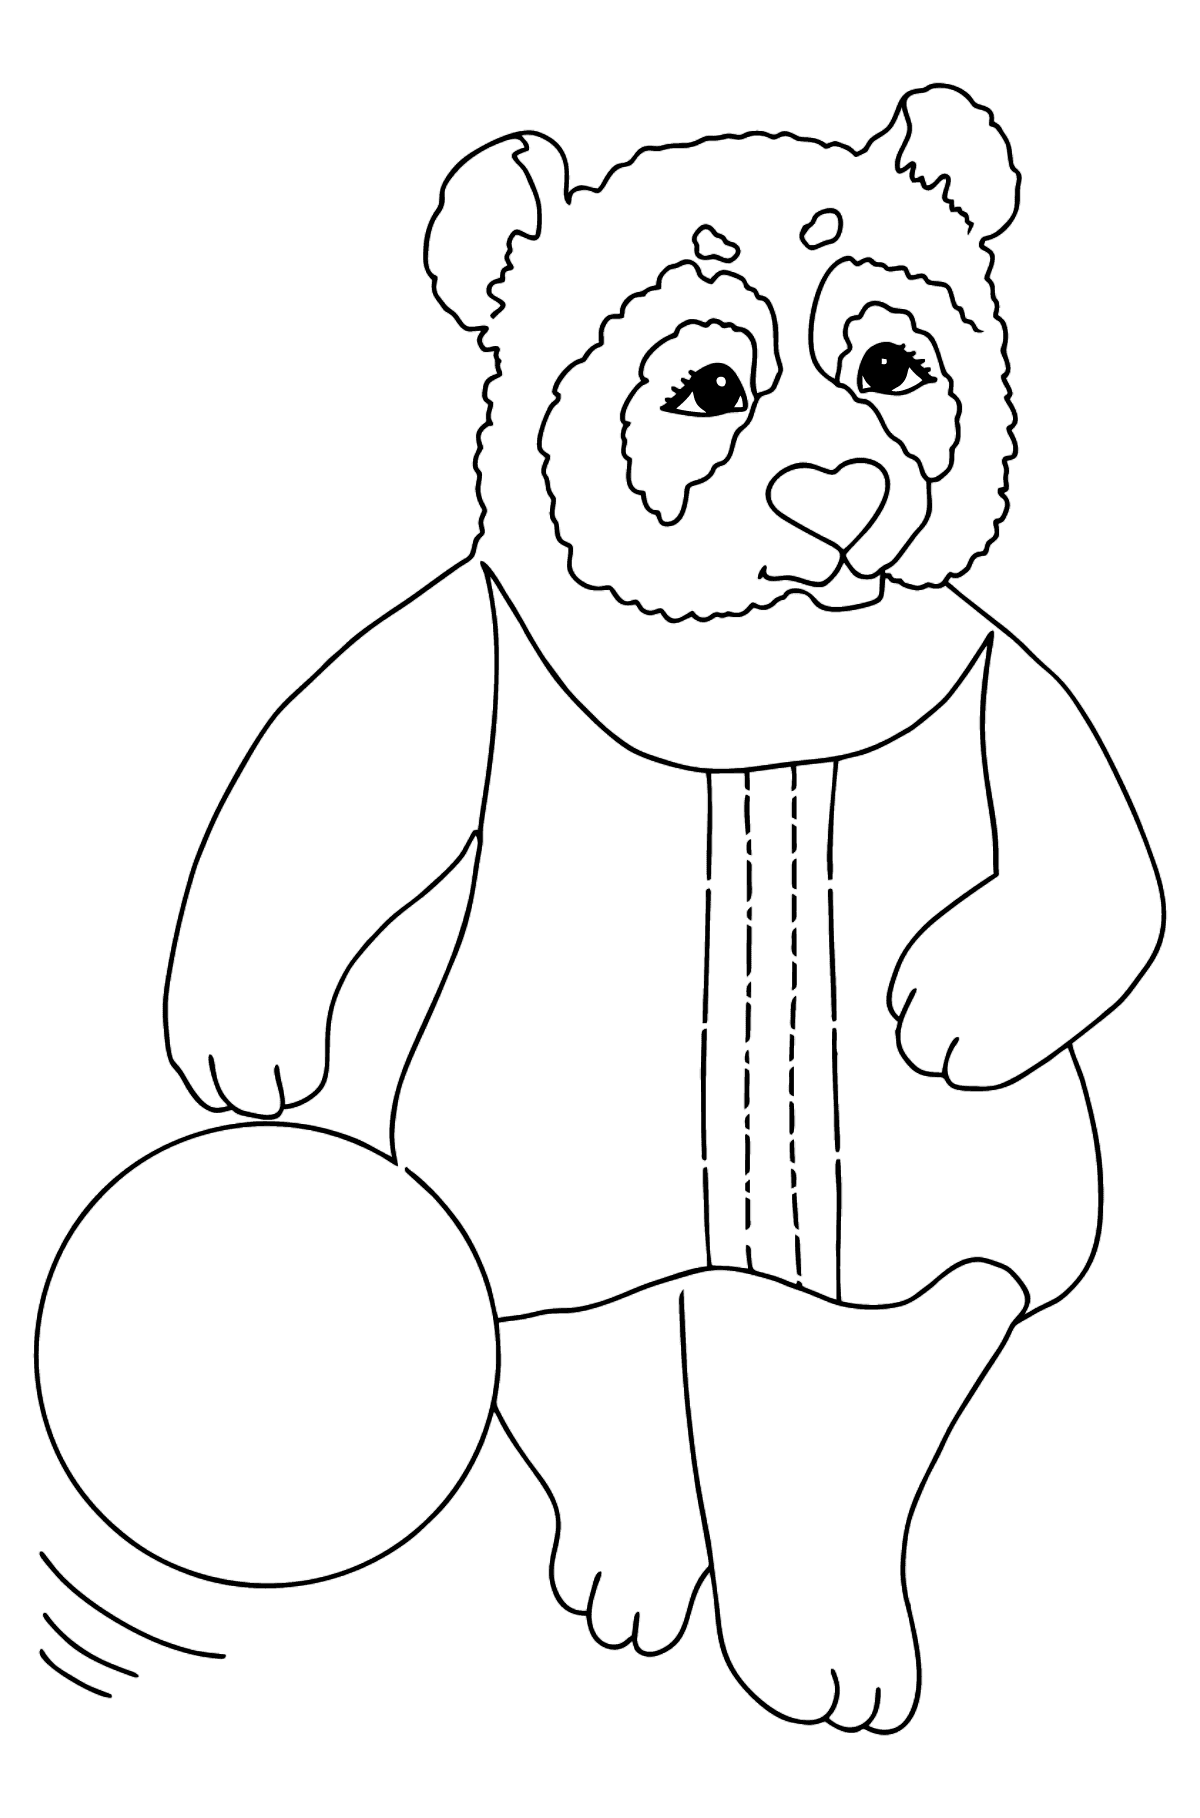 Tegning til fargelegging panda for babyer (enkelt) - Tegninger til fargelegging for barn